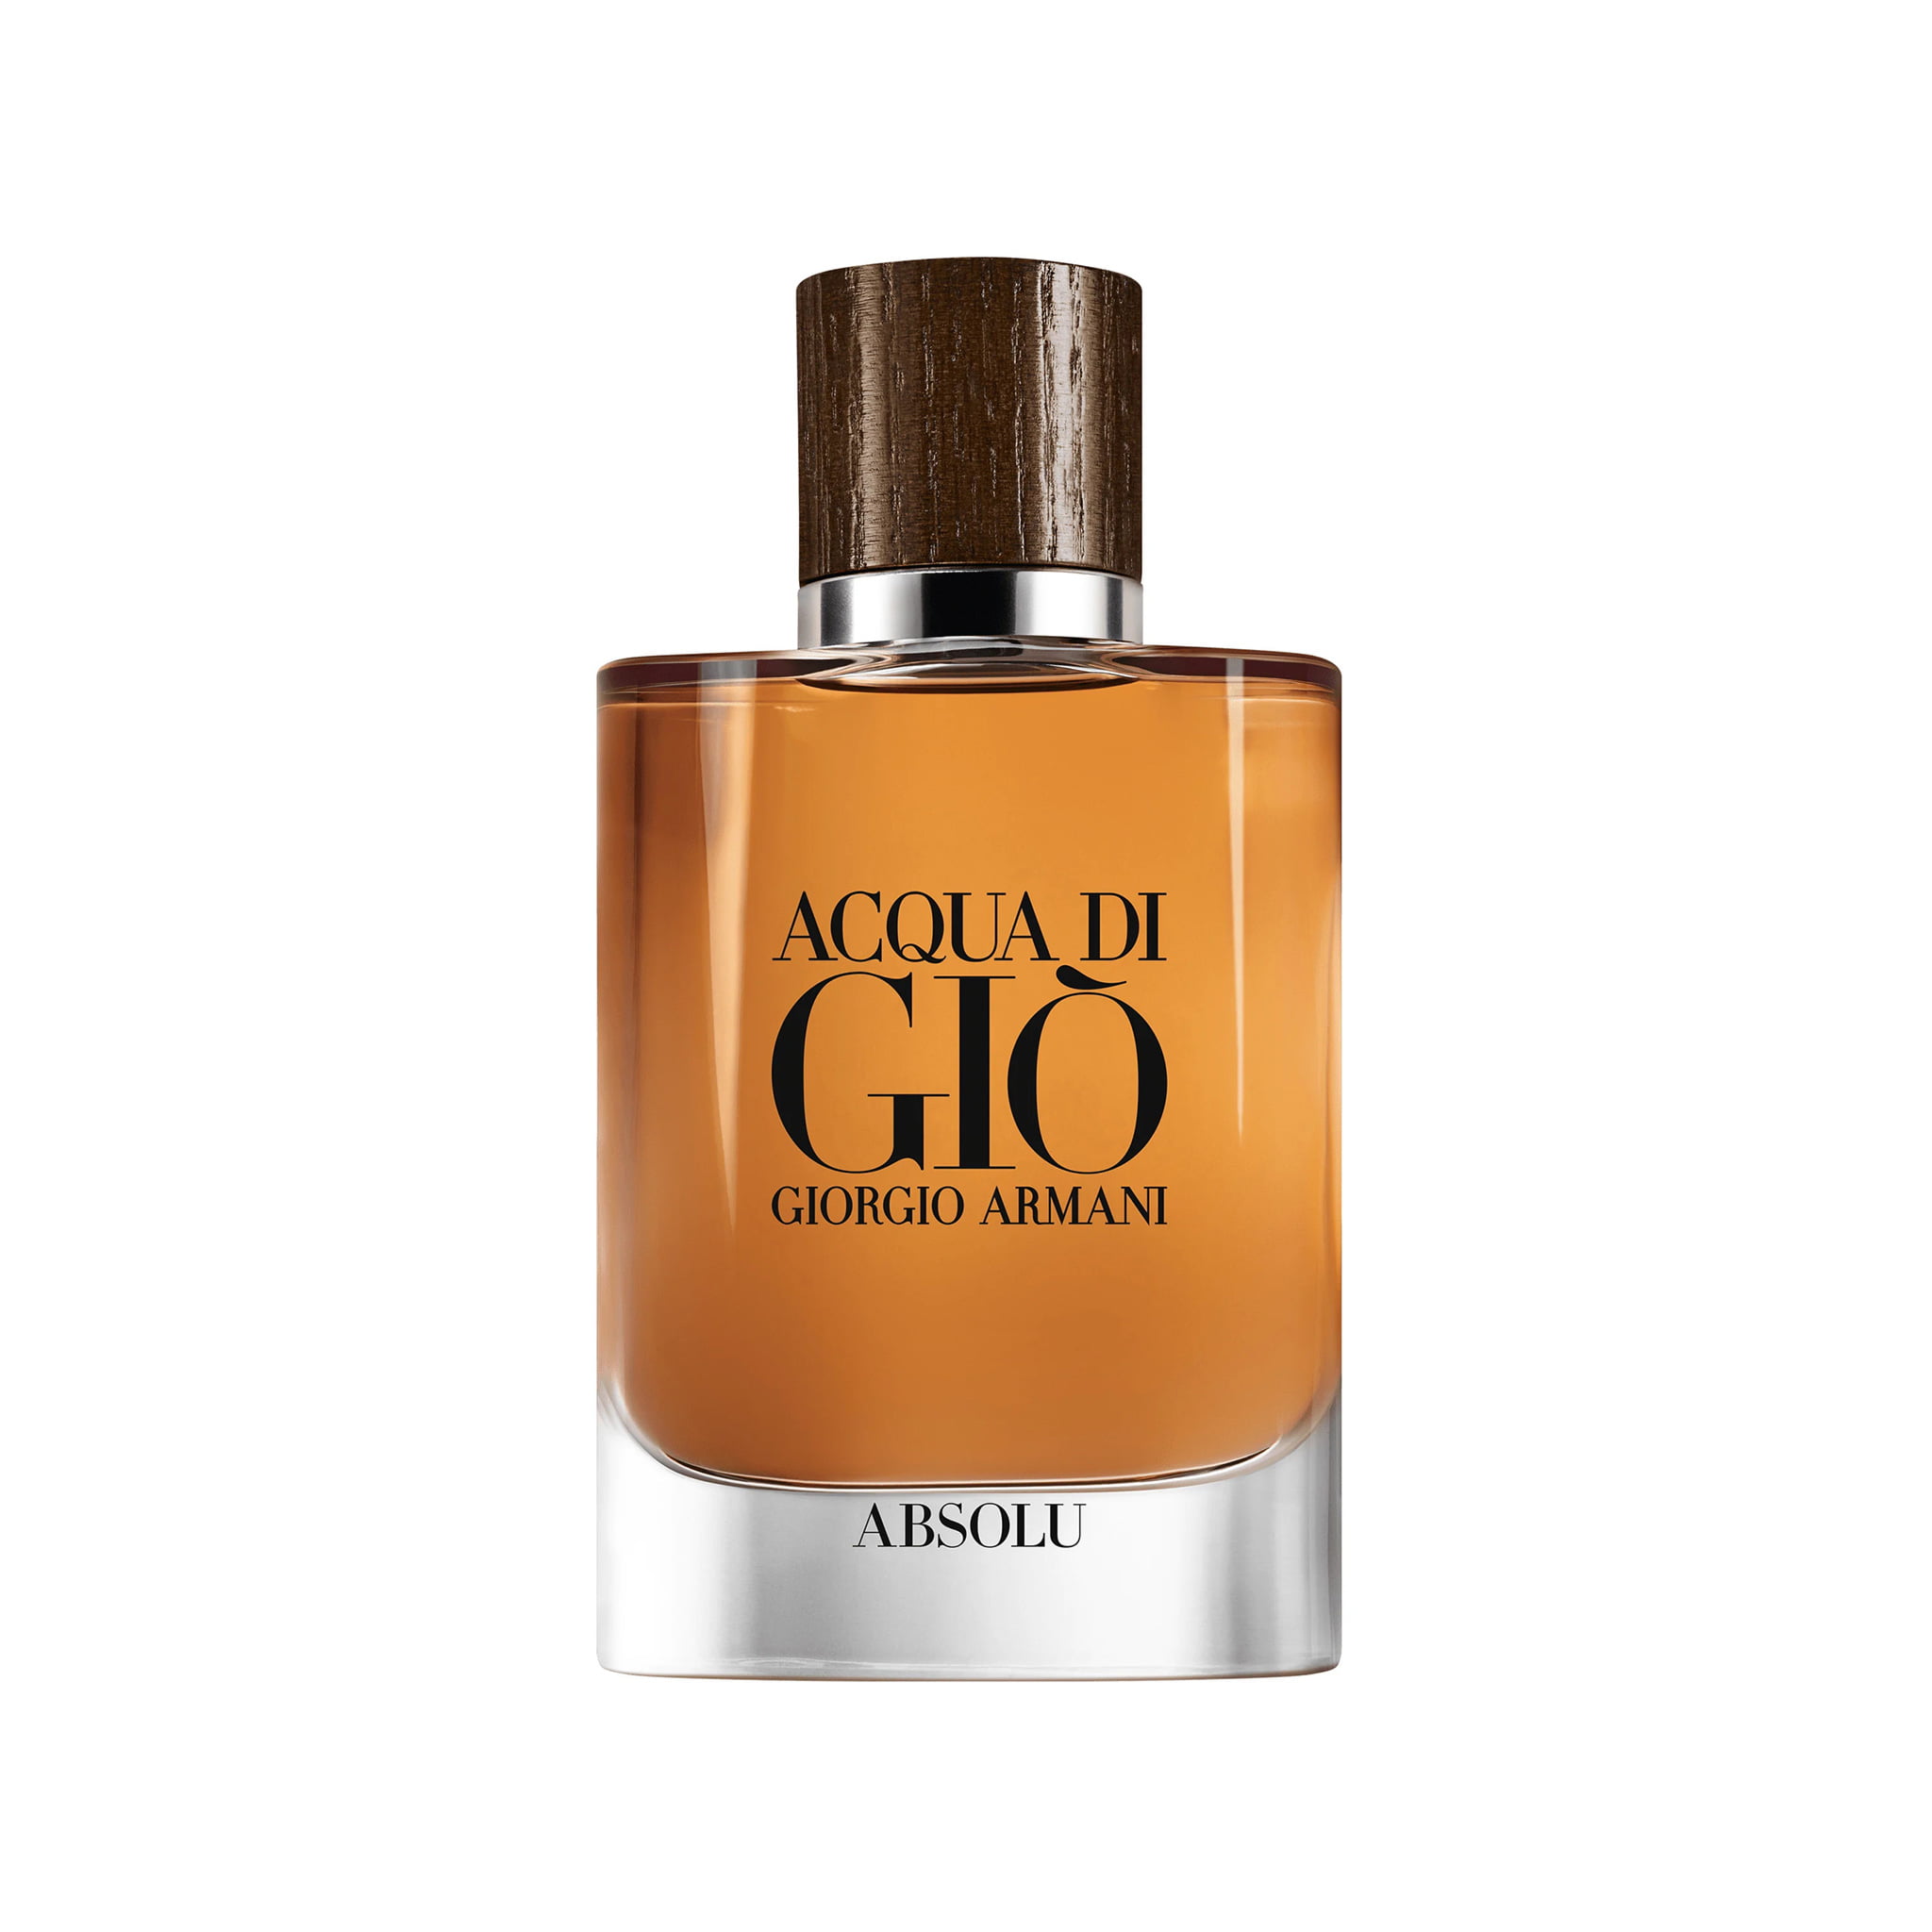 Giorgio Armani Acqua Di Gio Absolu For Men Eau de parfum 125ml